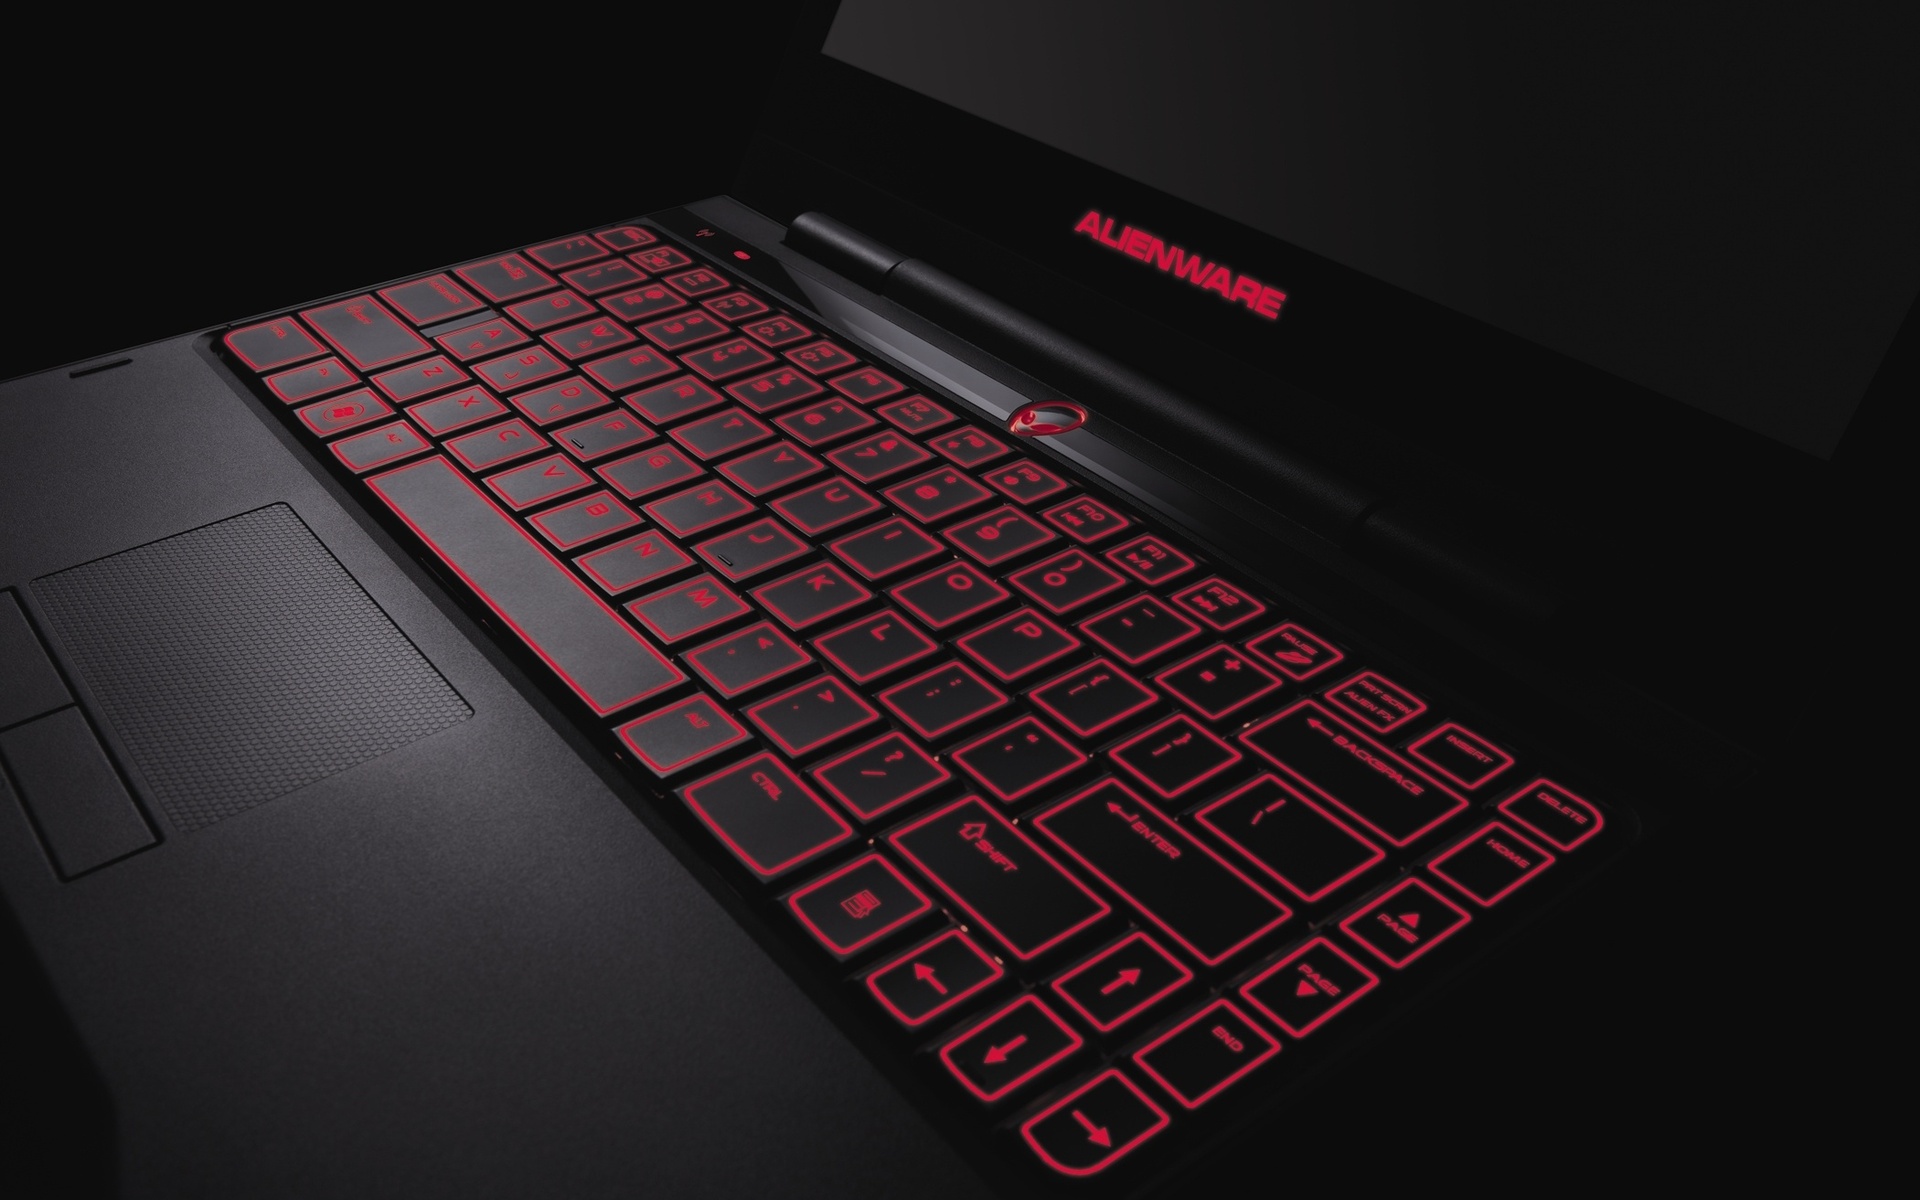 schwarze tapete für laptop,rot,laptop,leertaste,technologie,netbook